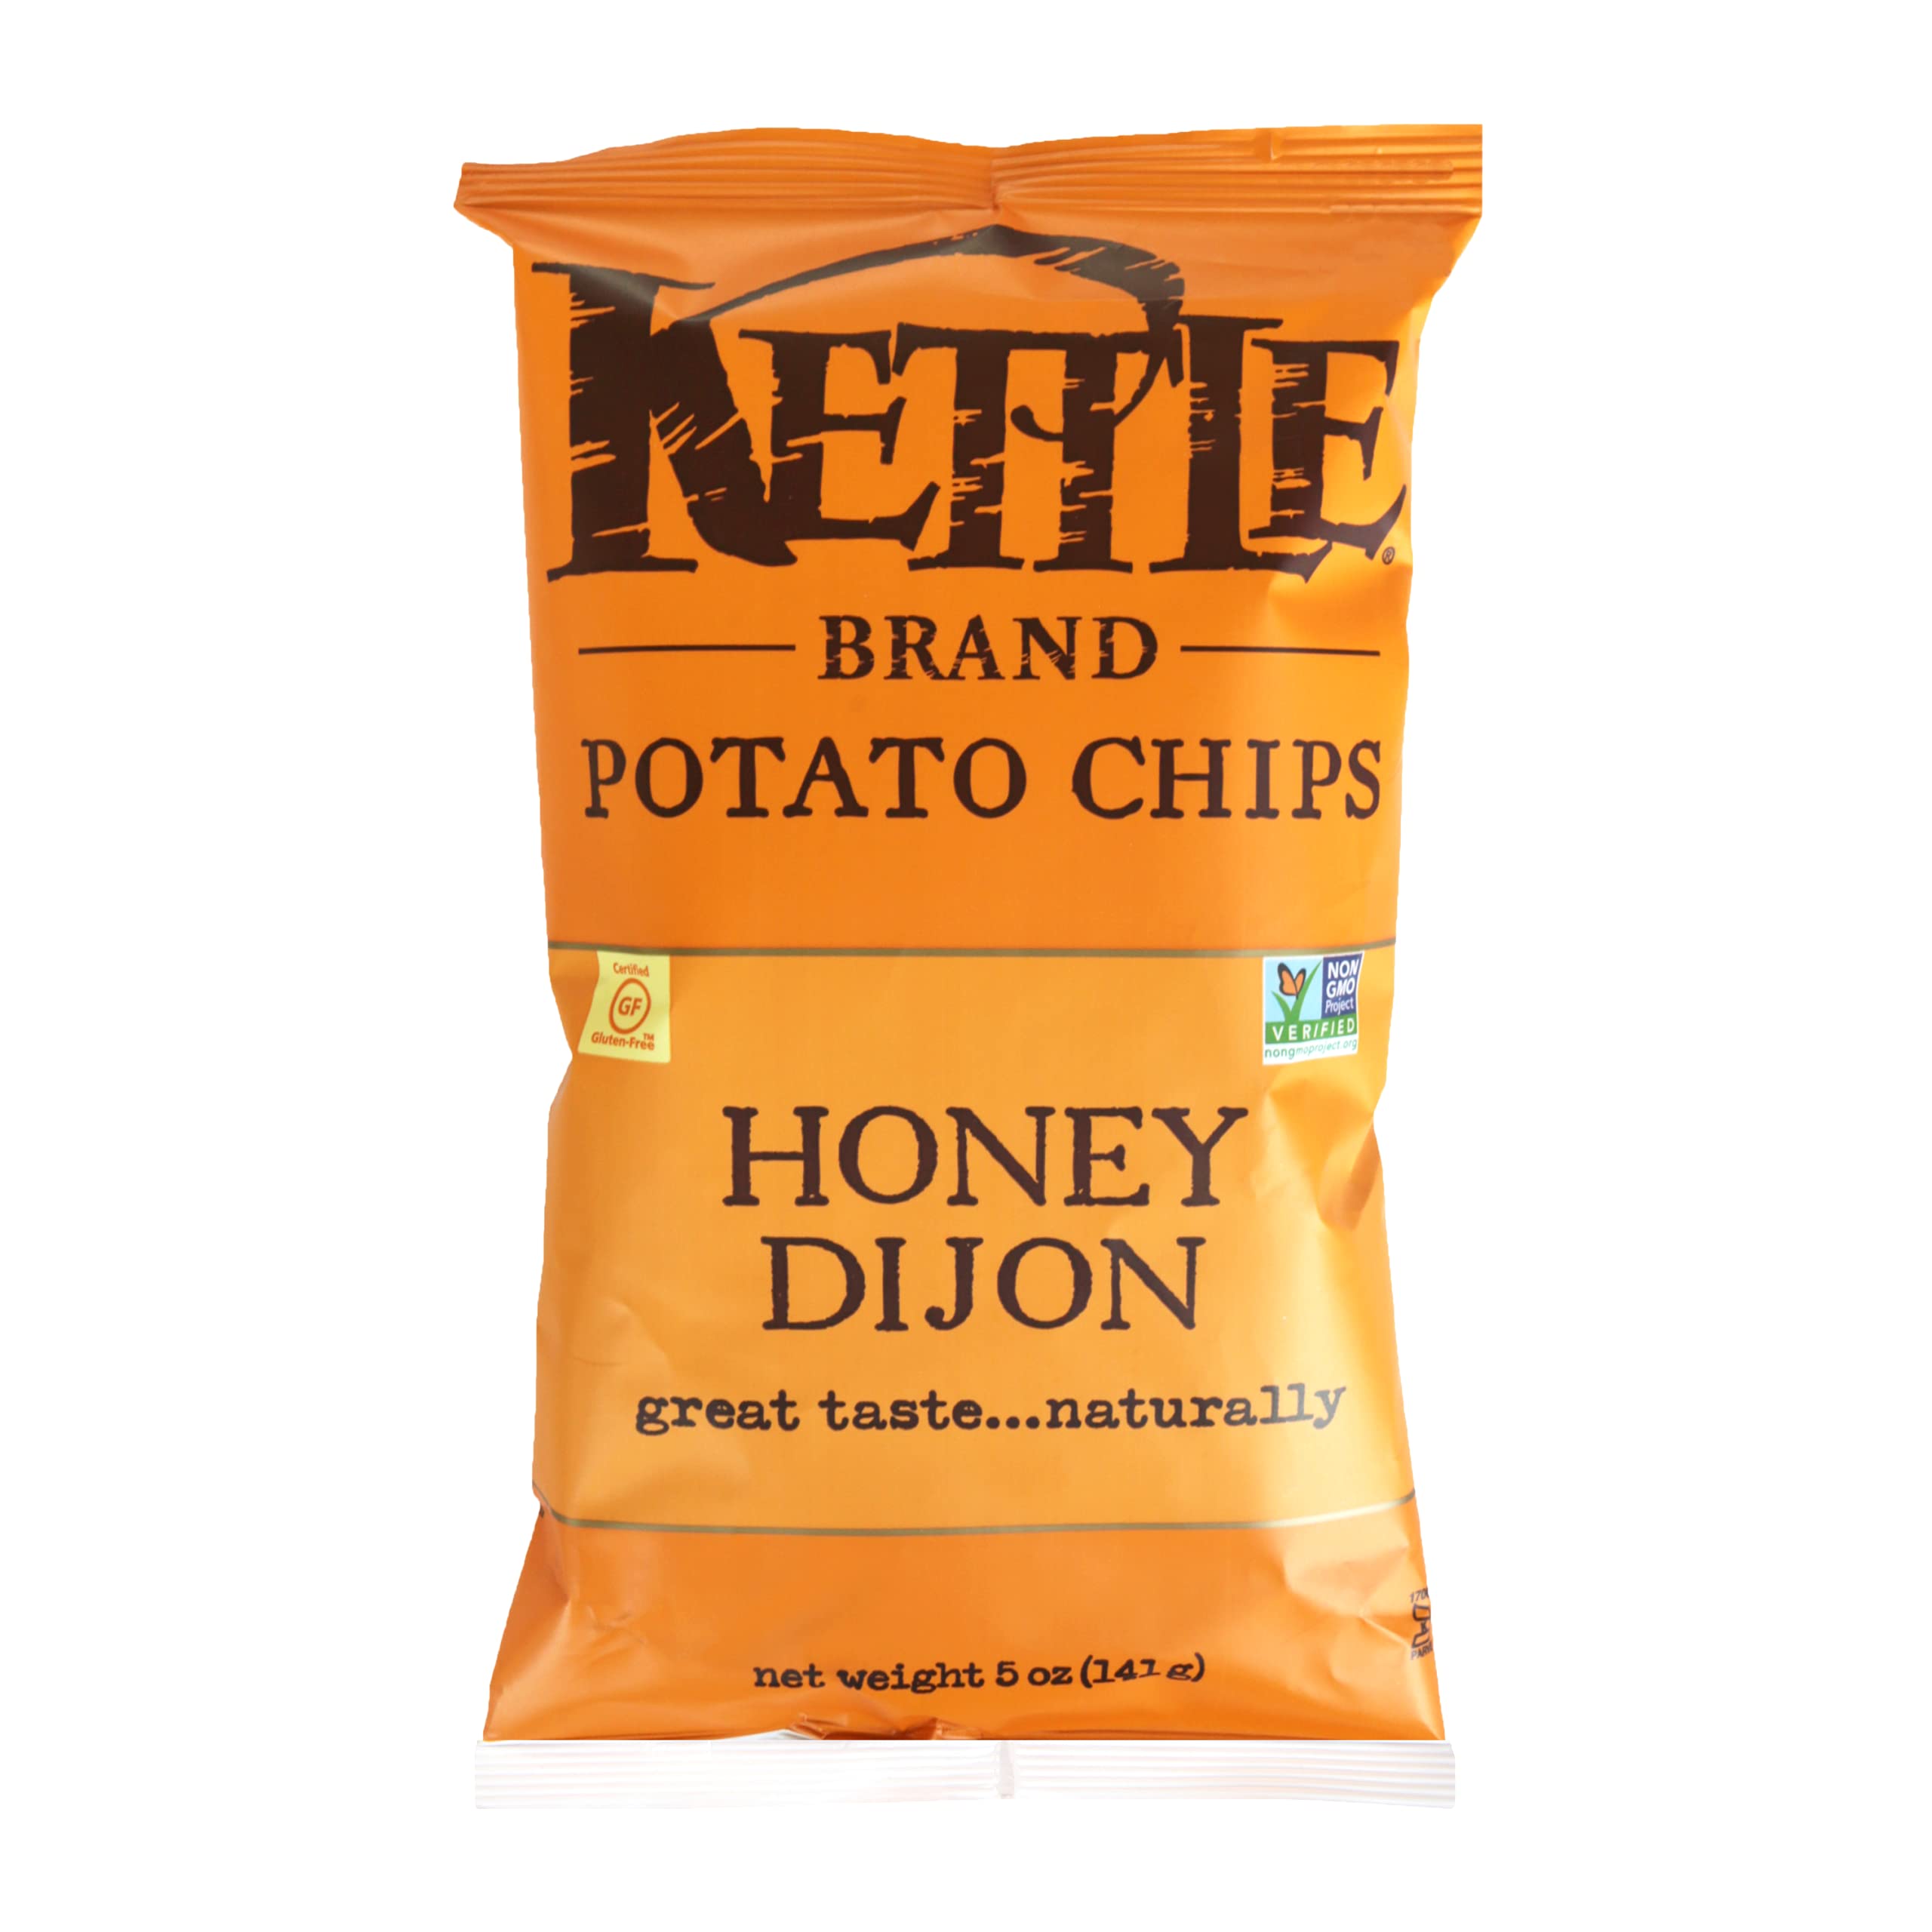 Kettle Chip Potato Honey Dijon 141G